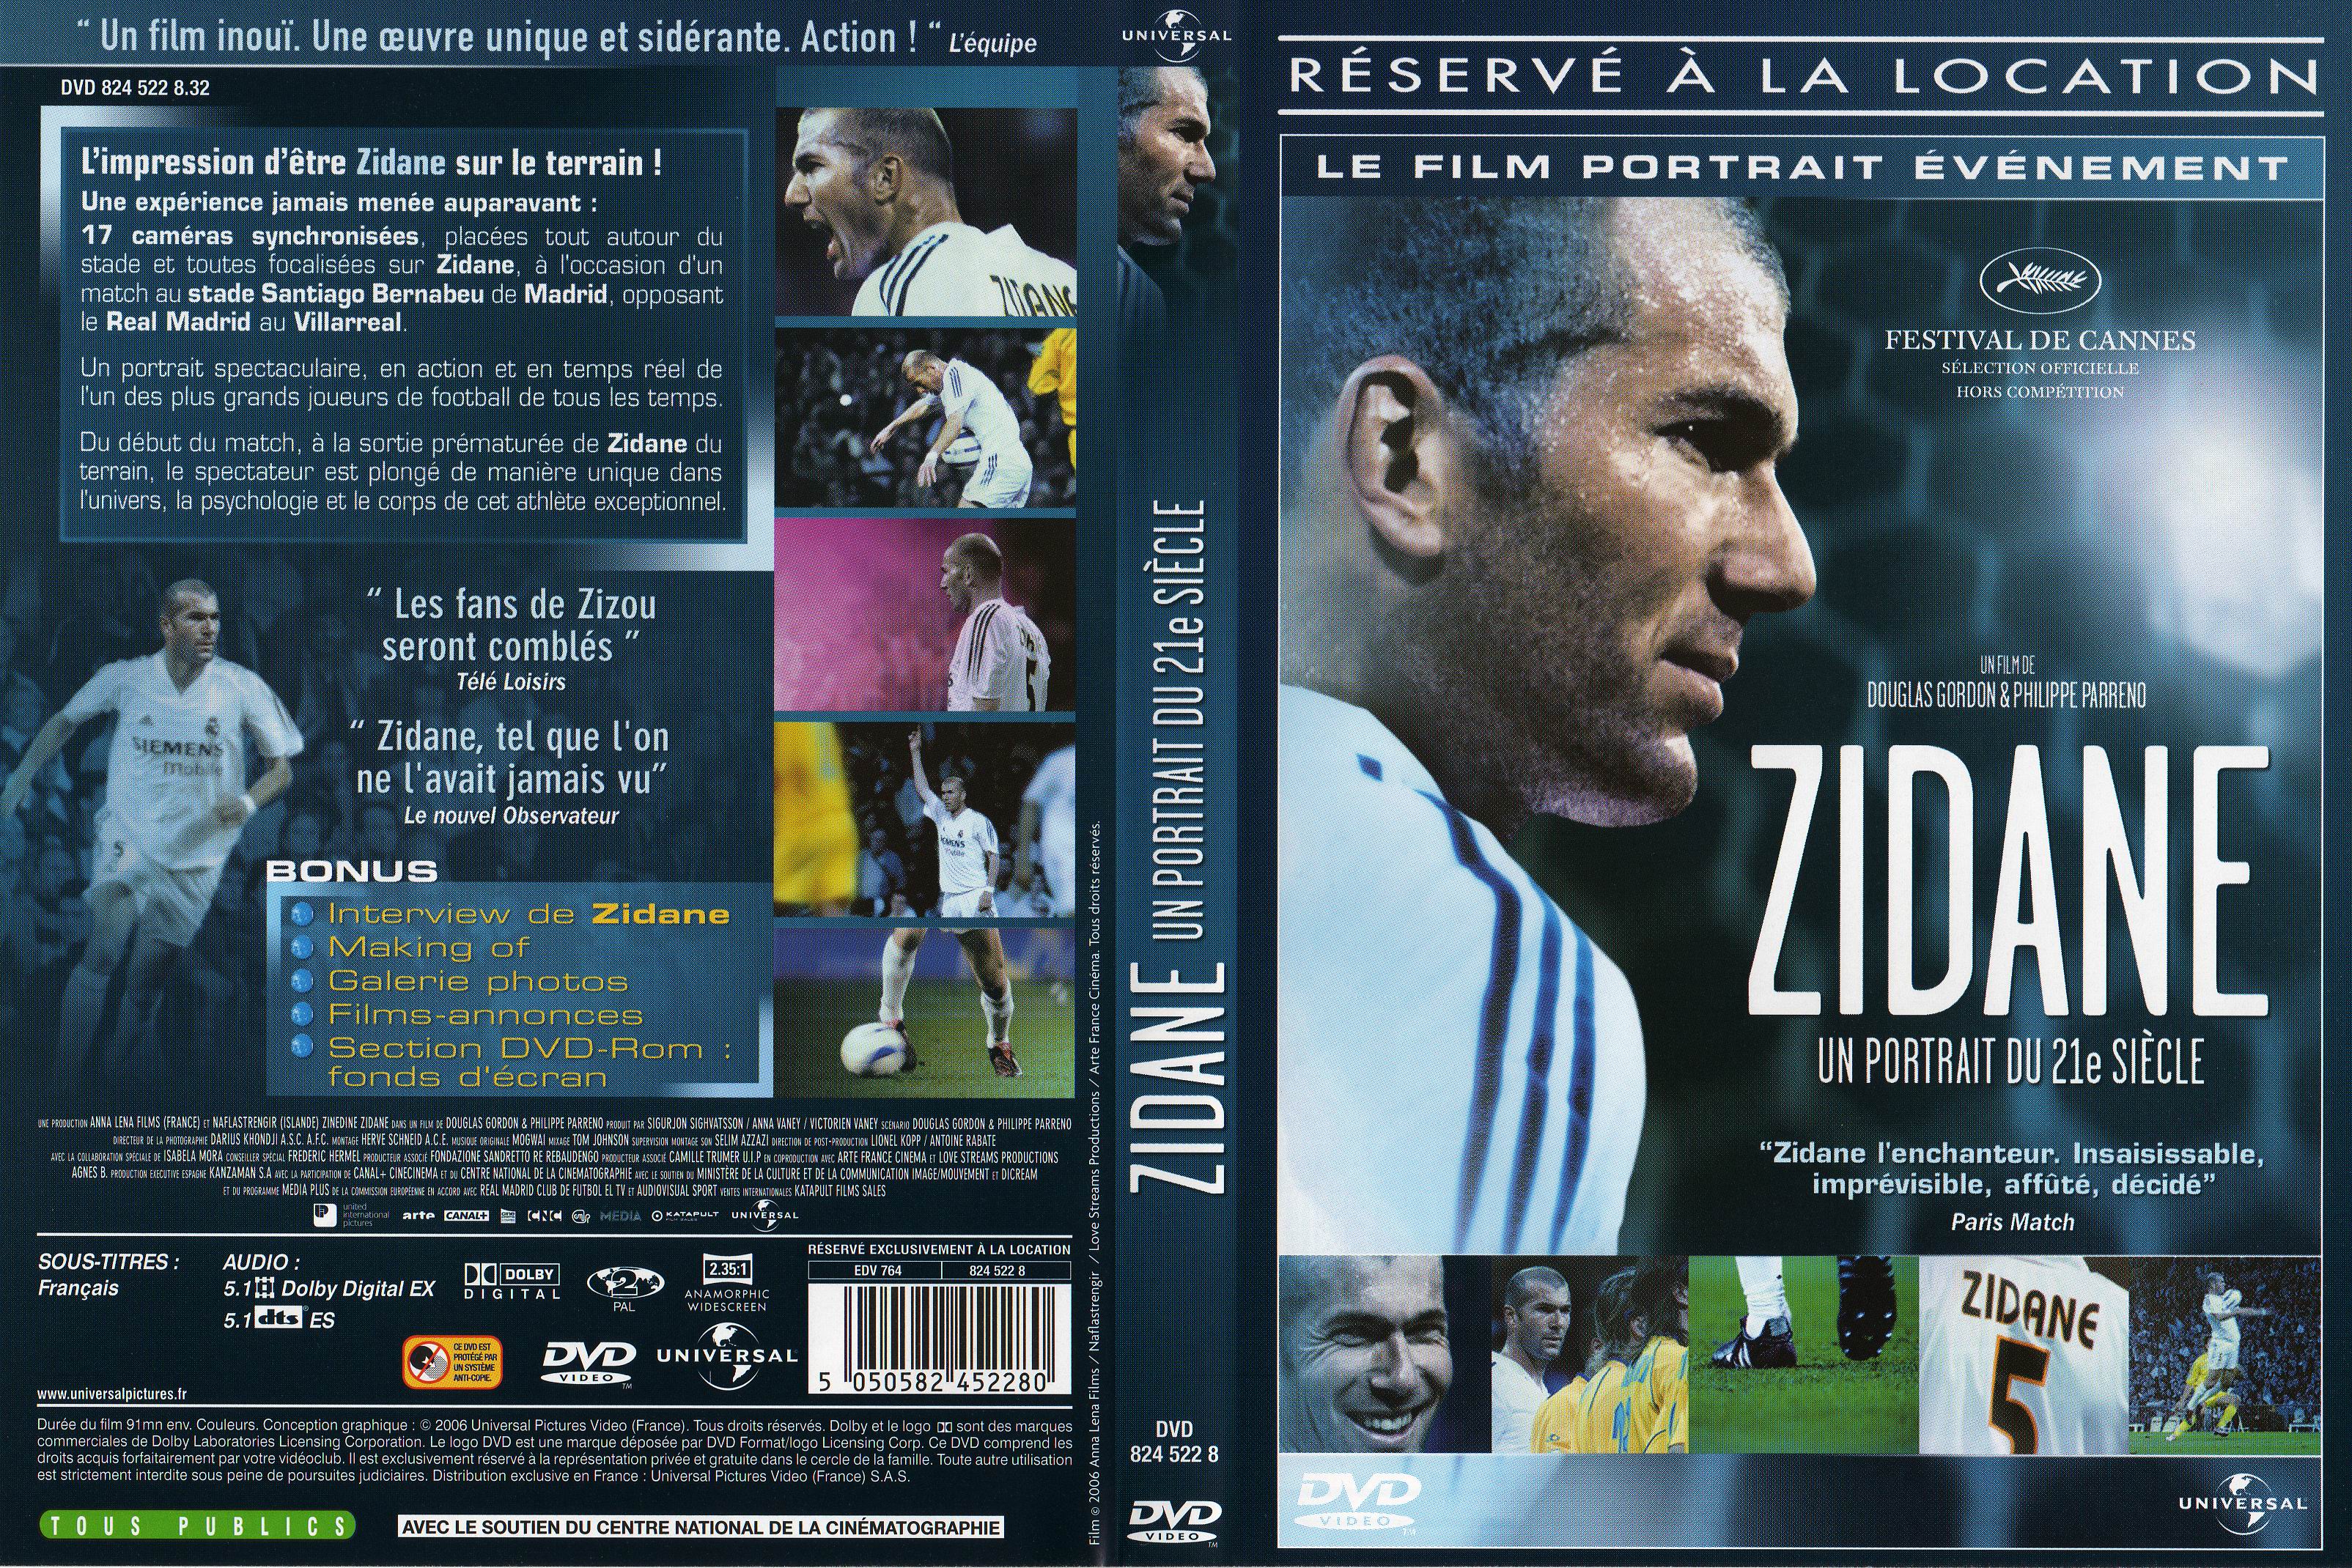 Jaquette DVD Zidane un portrait du XXIeme siecle